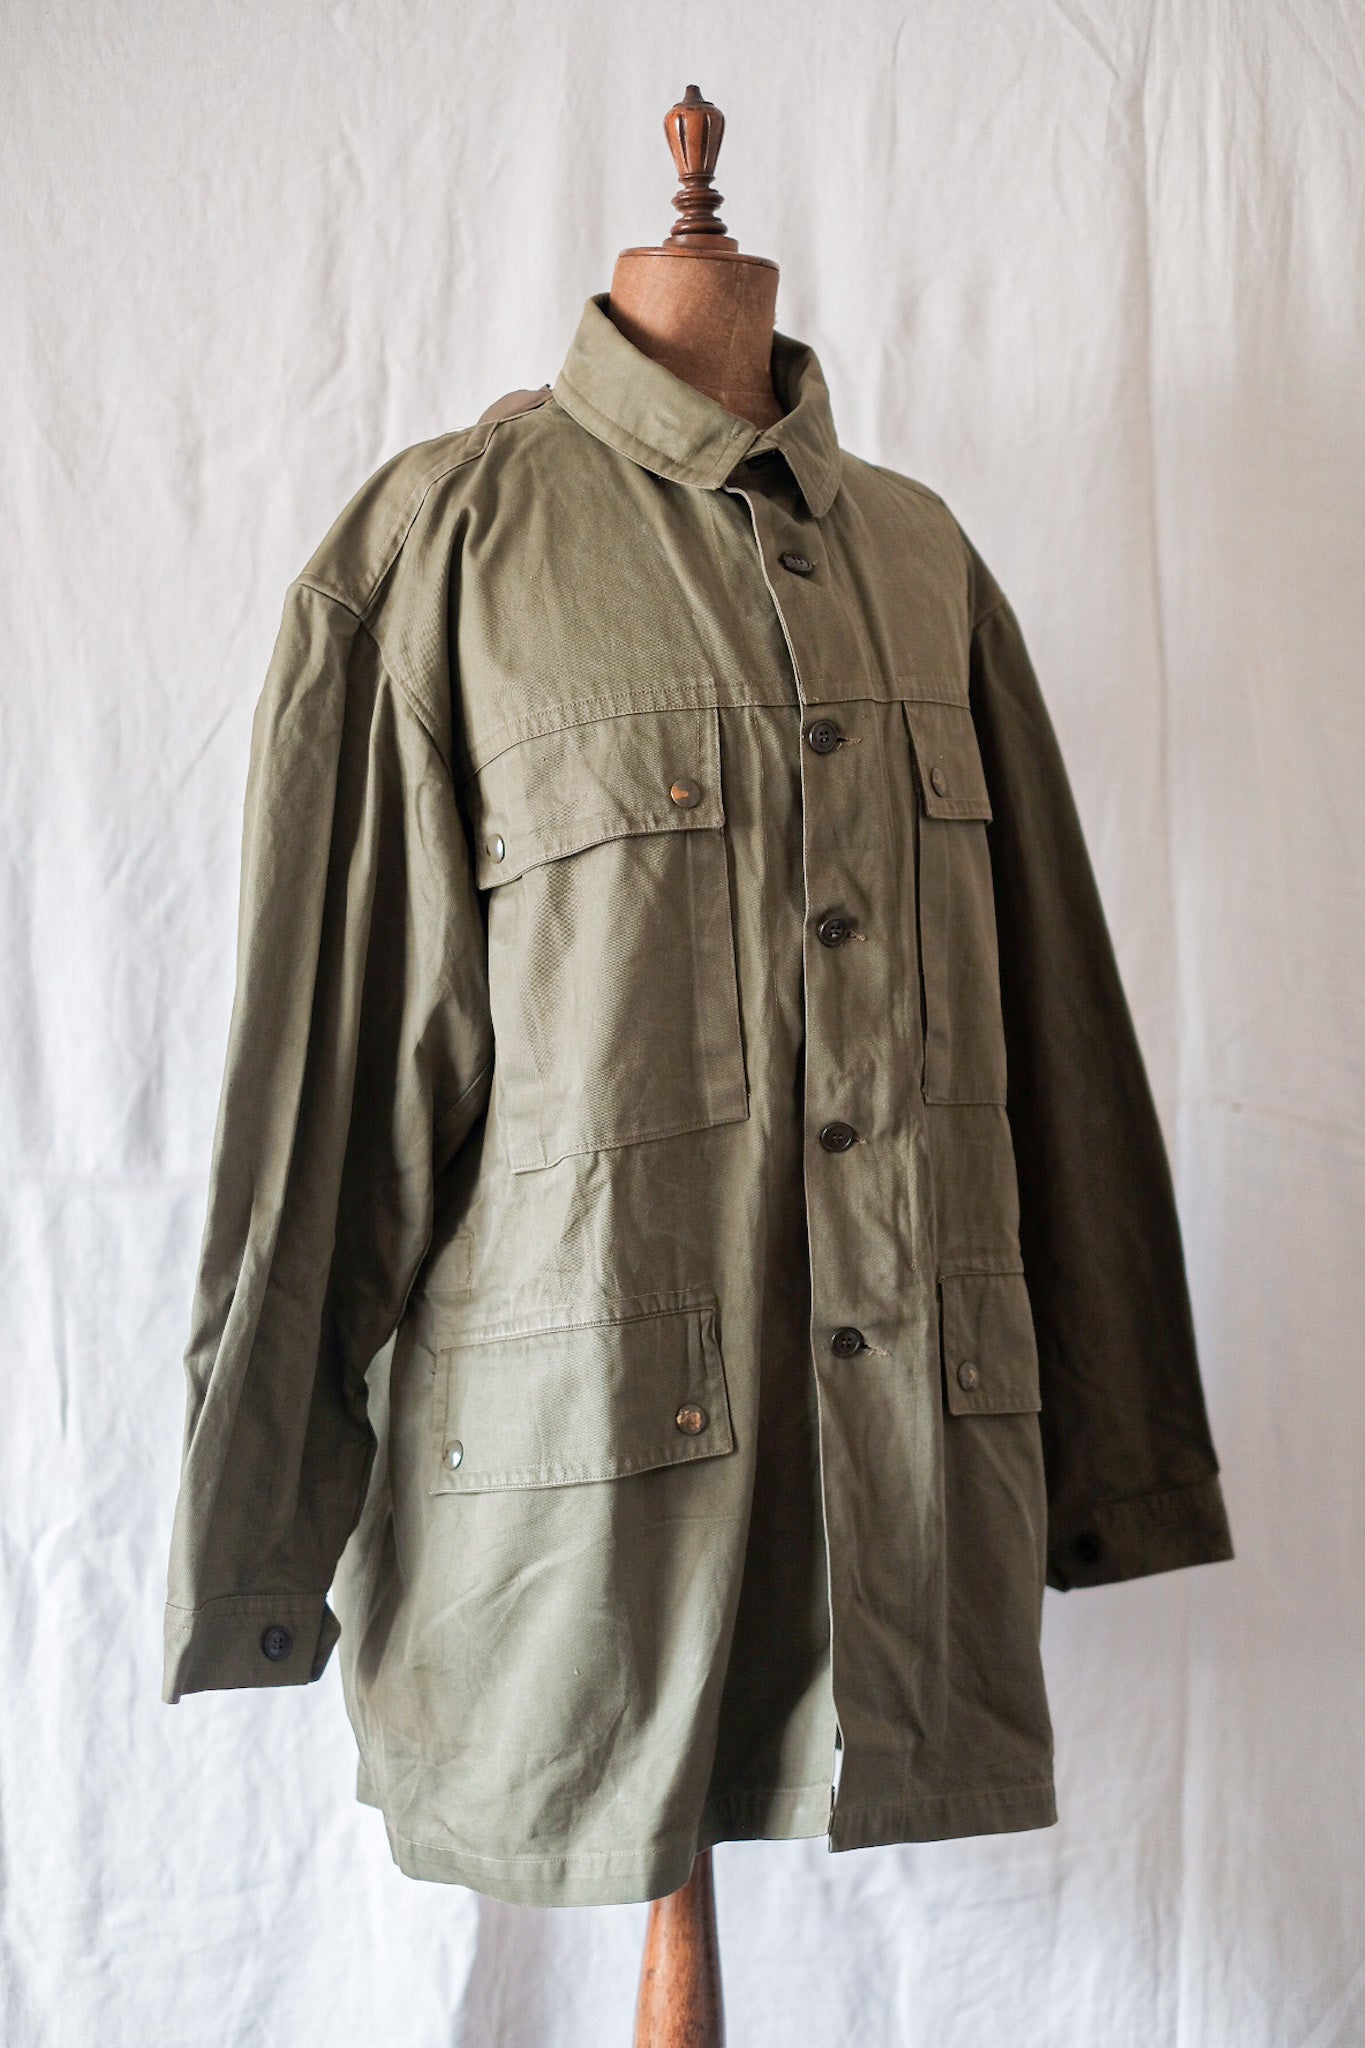 [~ 60 년대] 이탈리아 군대 알파인 재킷